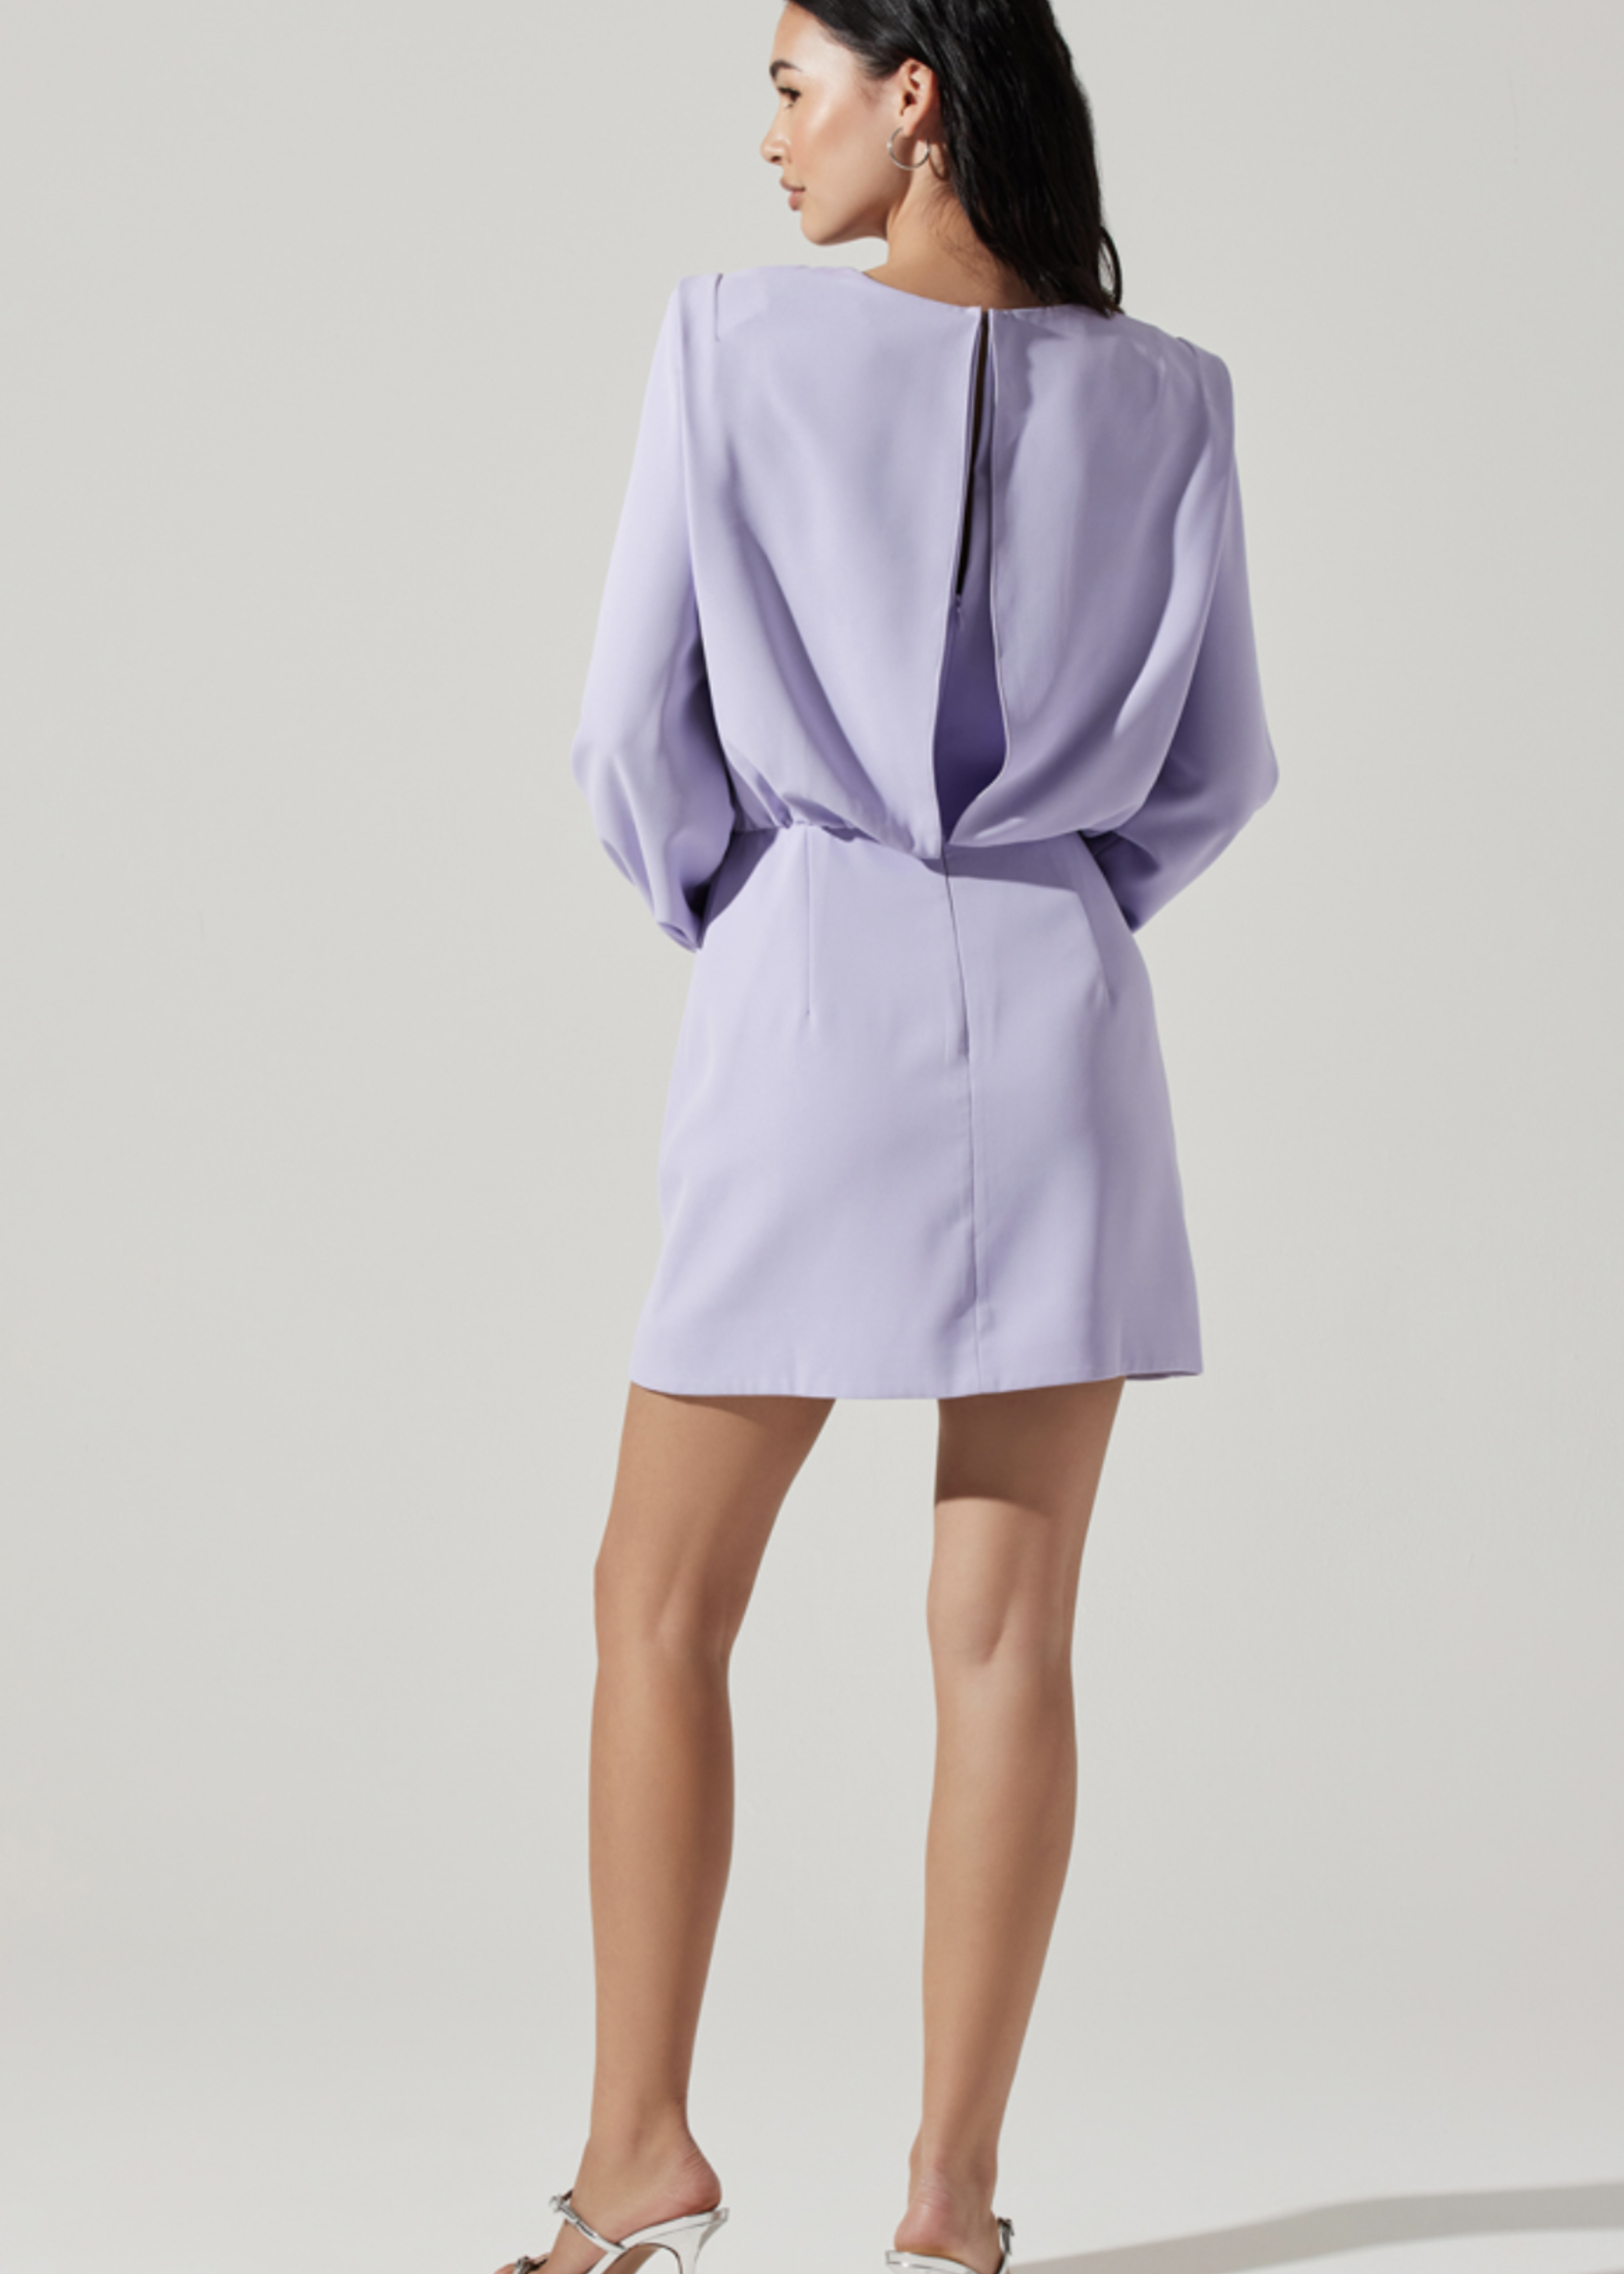 Elitaire Boutique Lunden Dress in Lavender